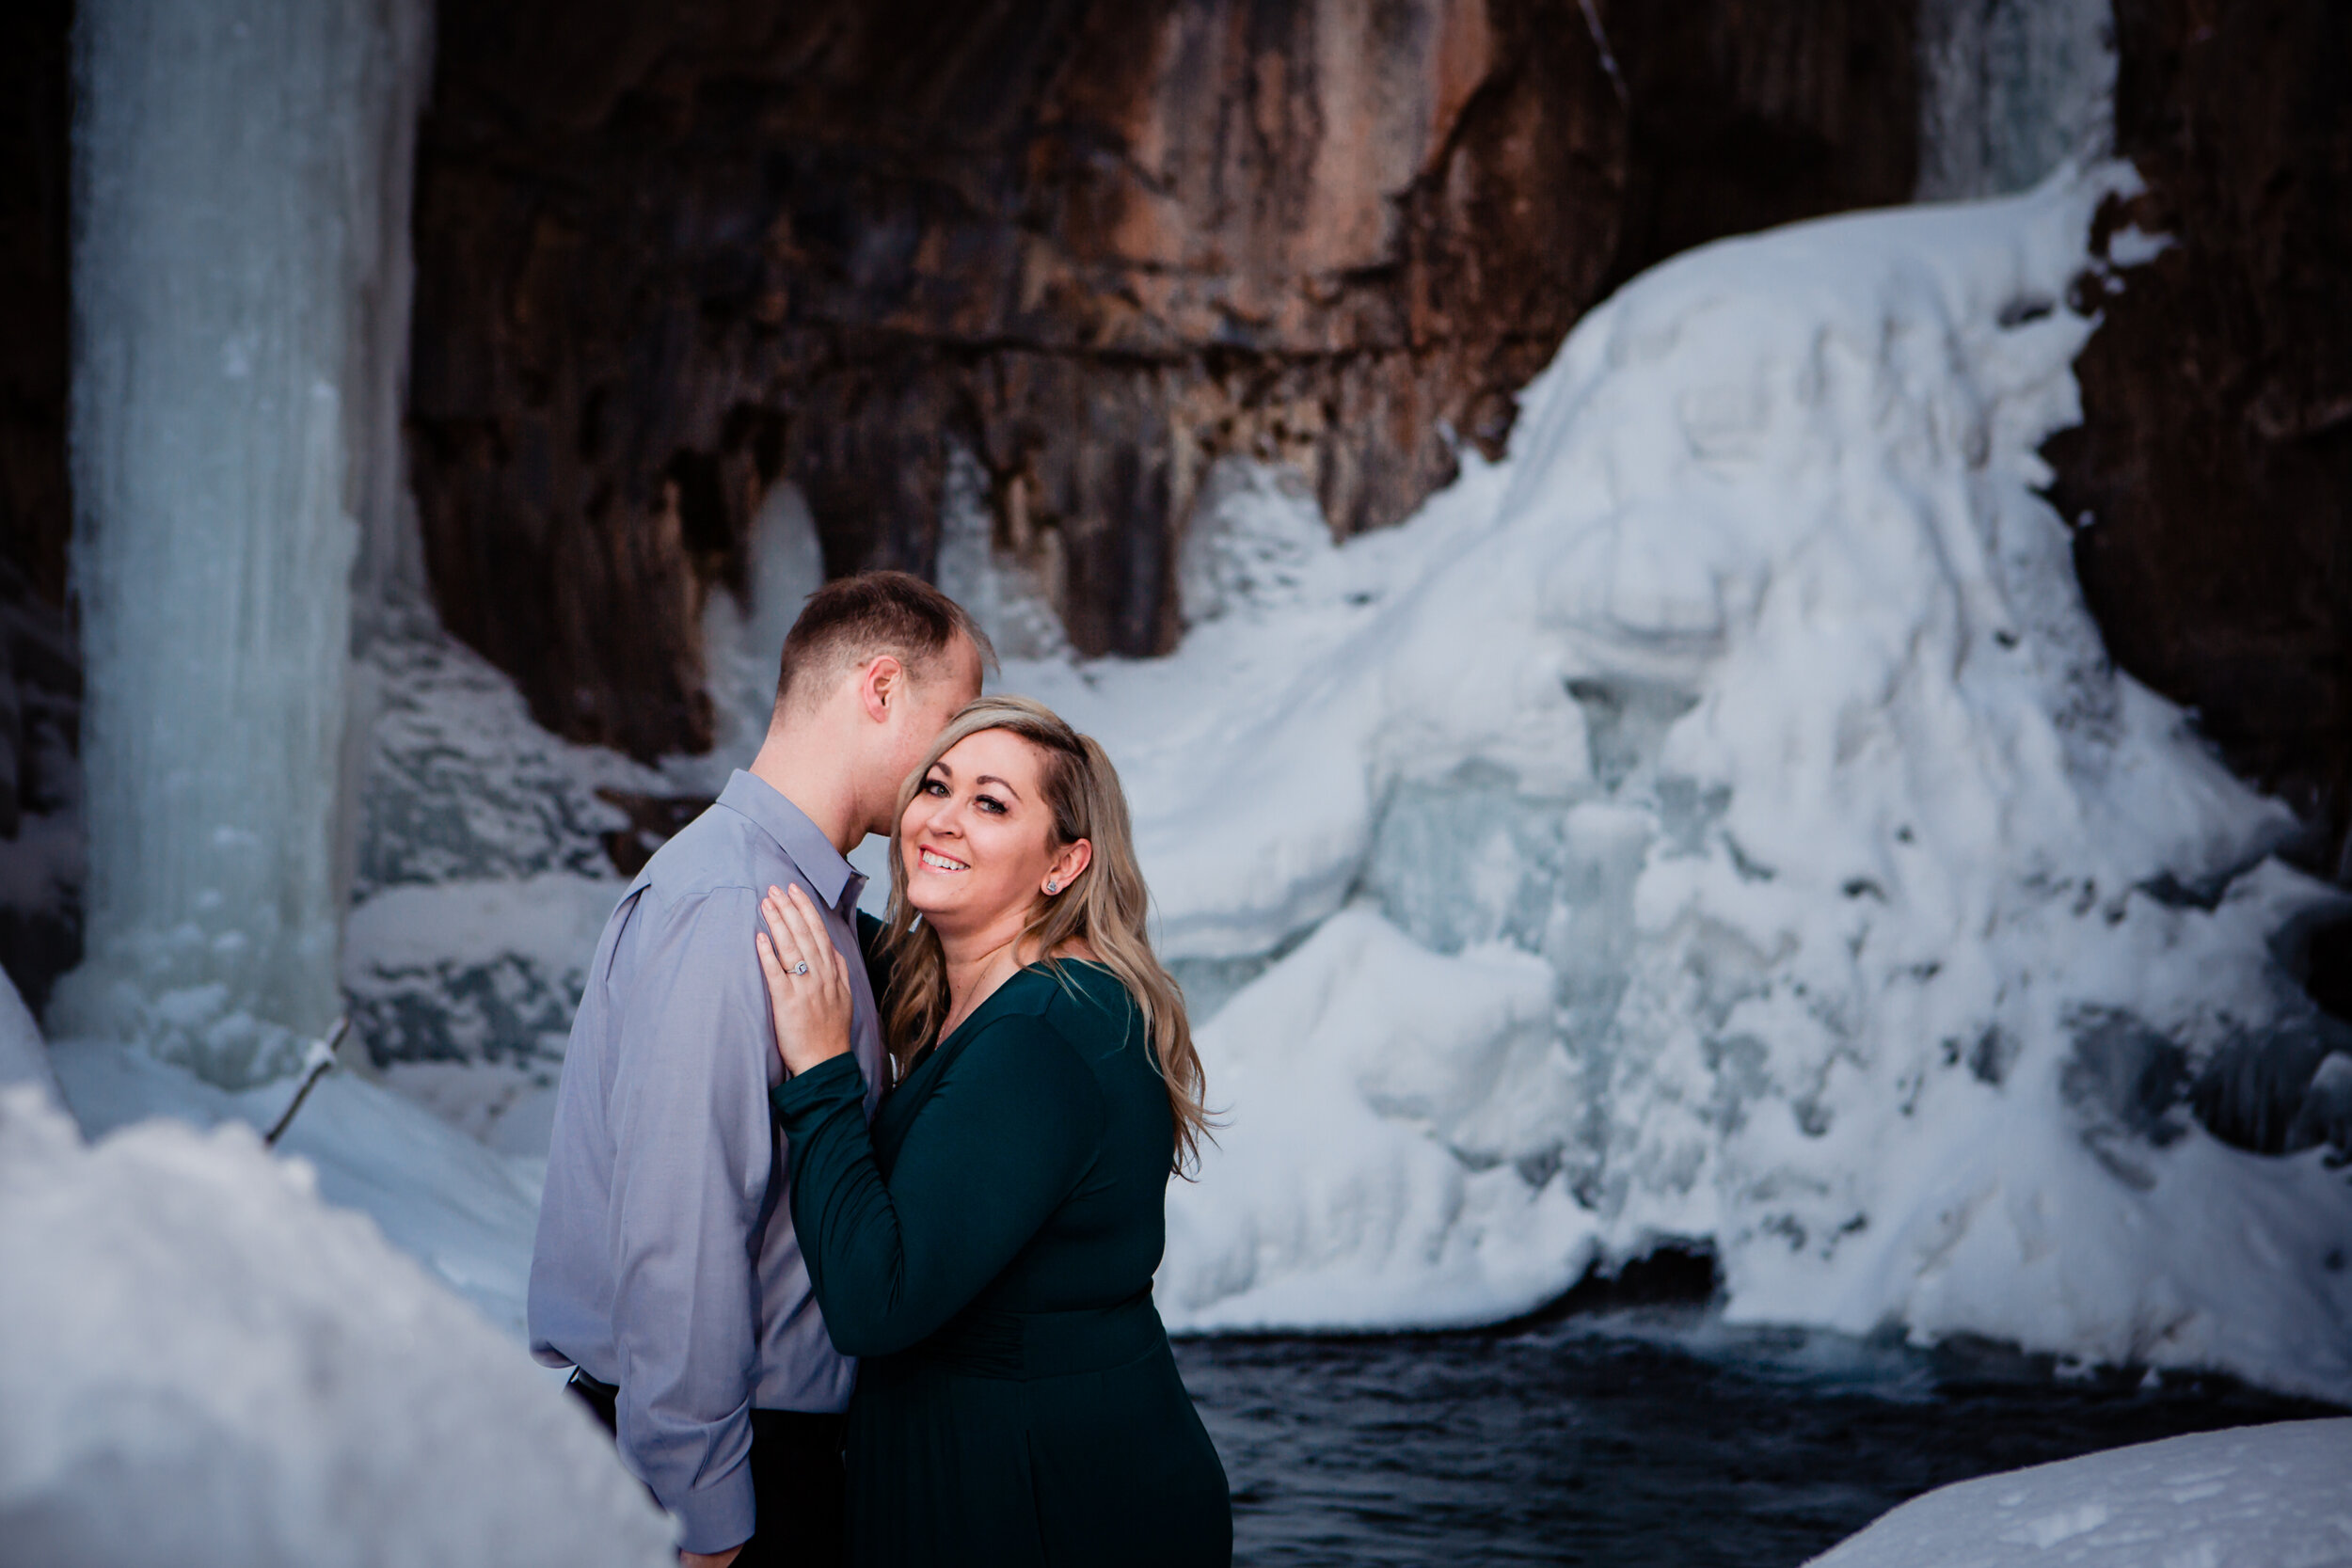  Durango colorado winter engagement photos  Cascade creek  Waterfalls frozen  ©Alexi Hubbell Photography 